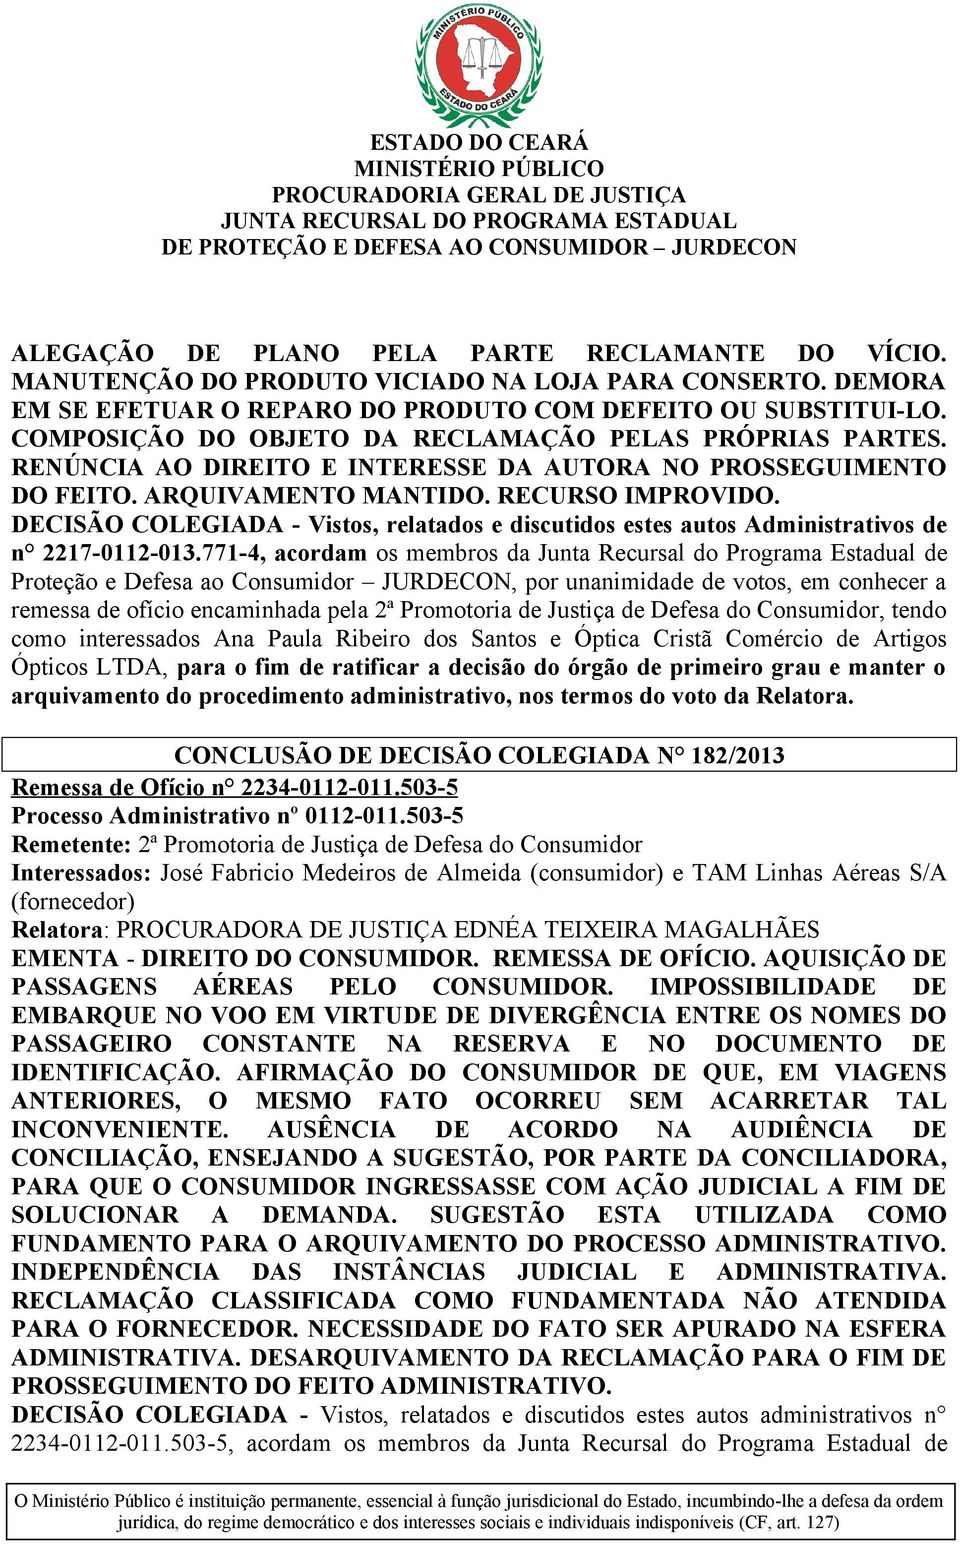 DECISÃO COLEGIADA - Vistos, relatados e discutidos estes autos Administrativos de n 2217-0112-013.